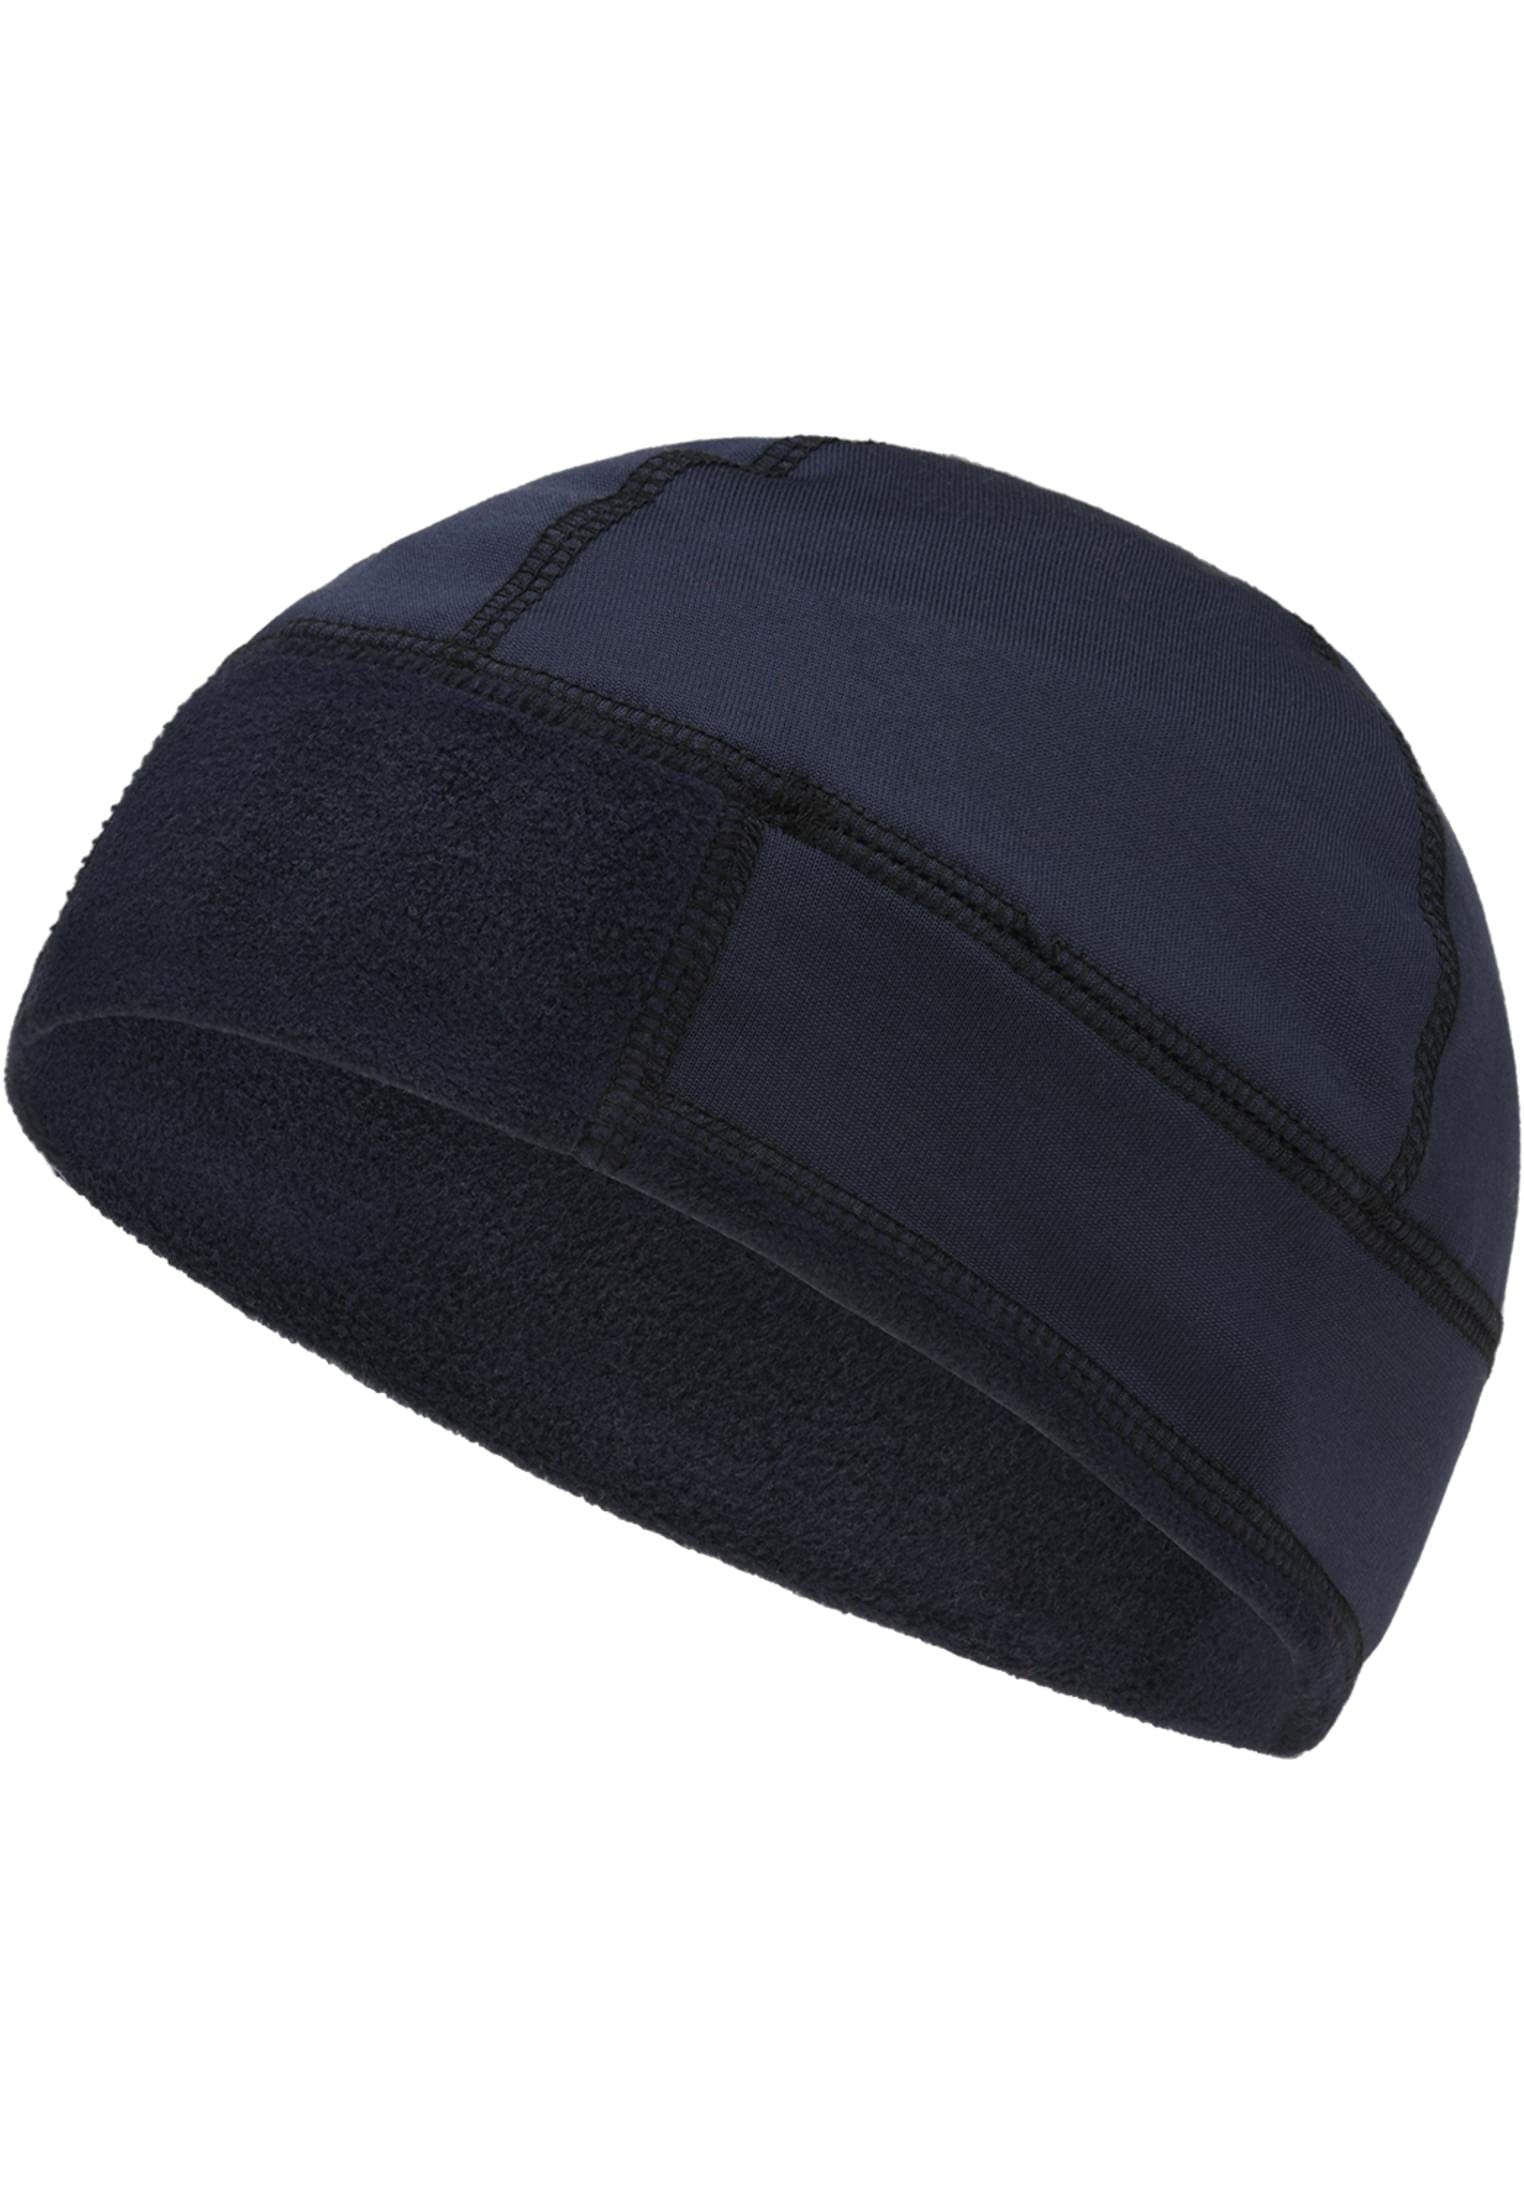 Fleece BW navy Brandit Cap Cap Flex Accessoires